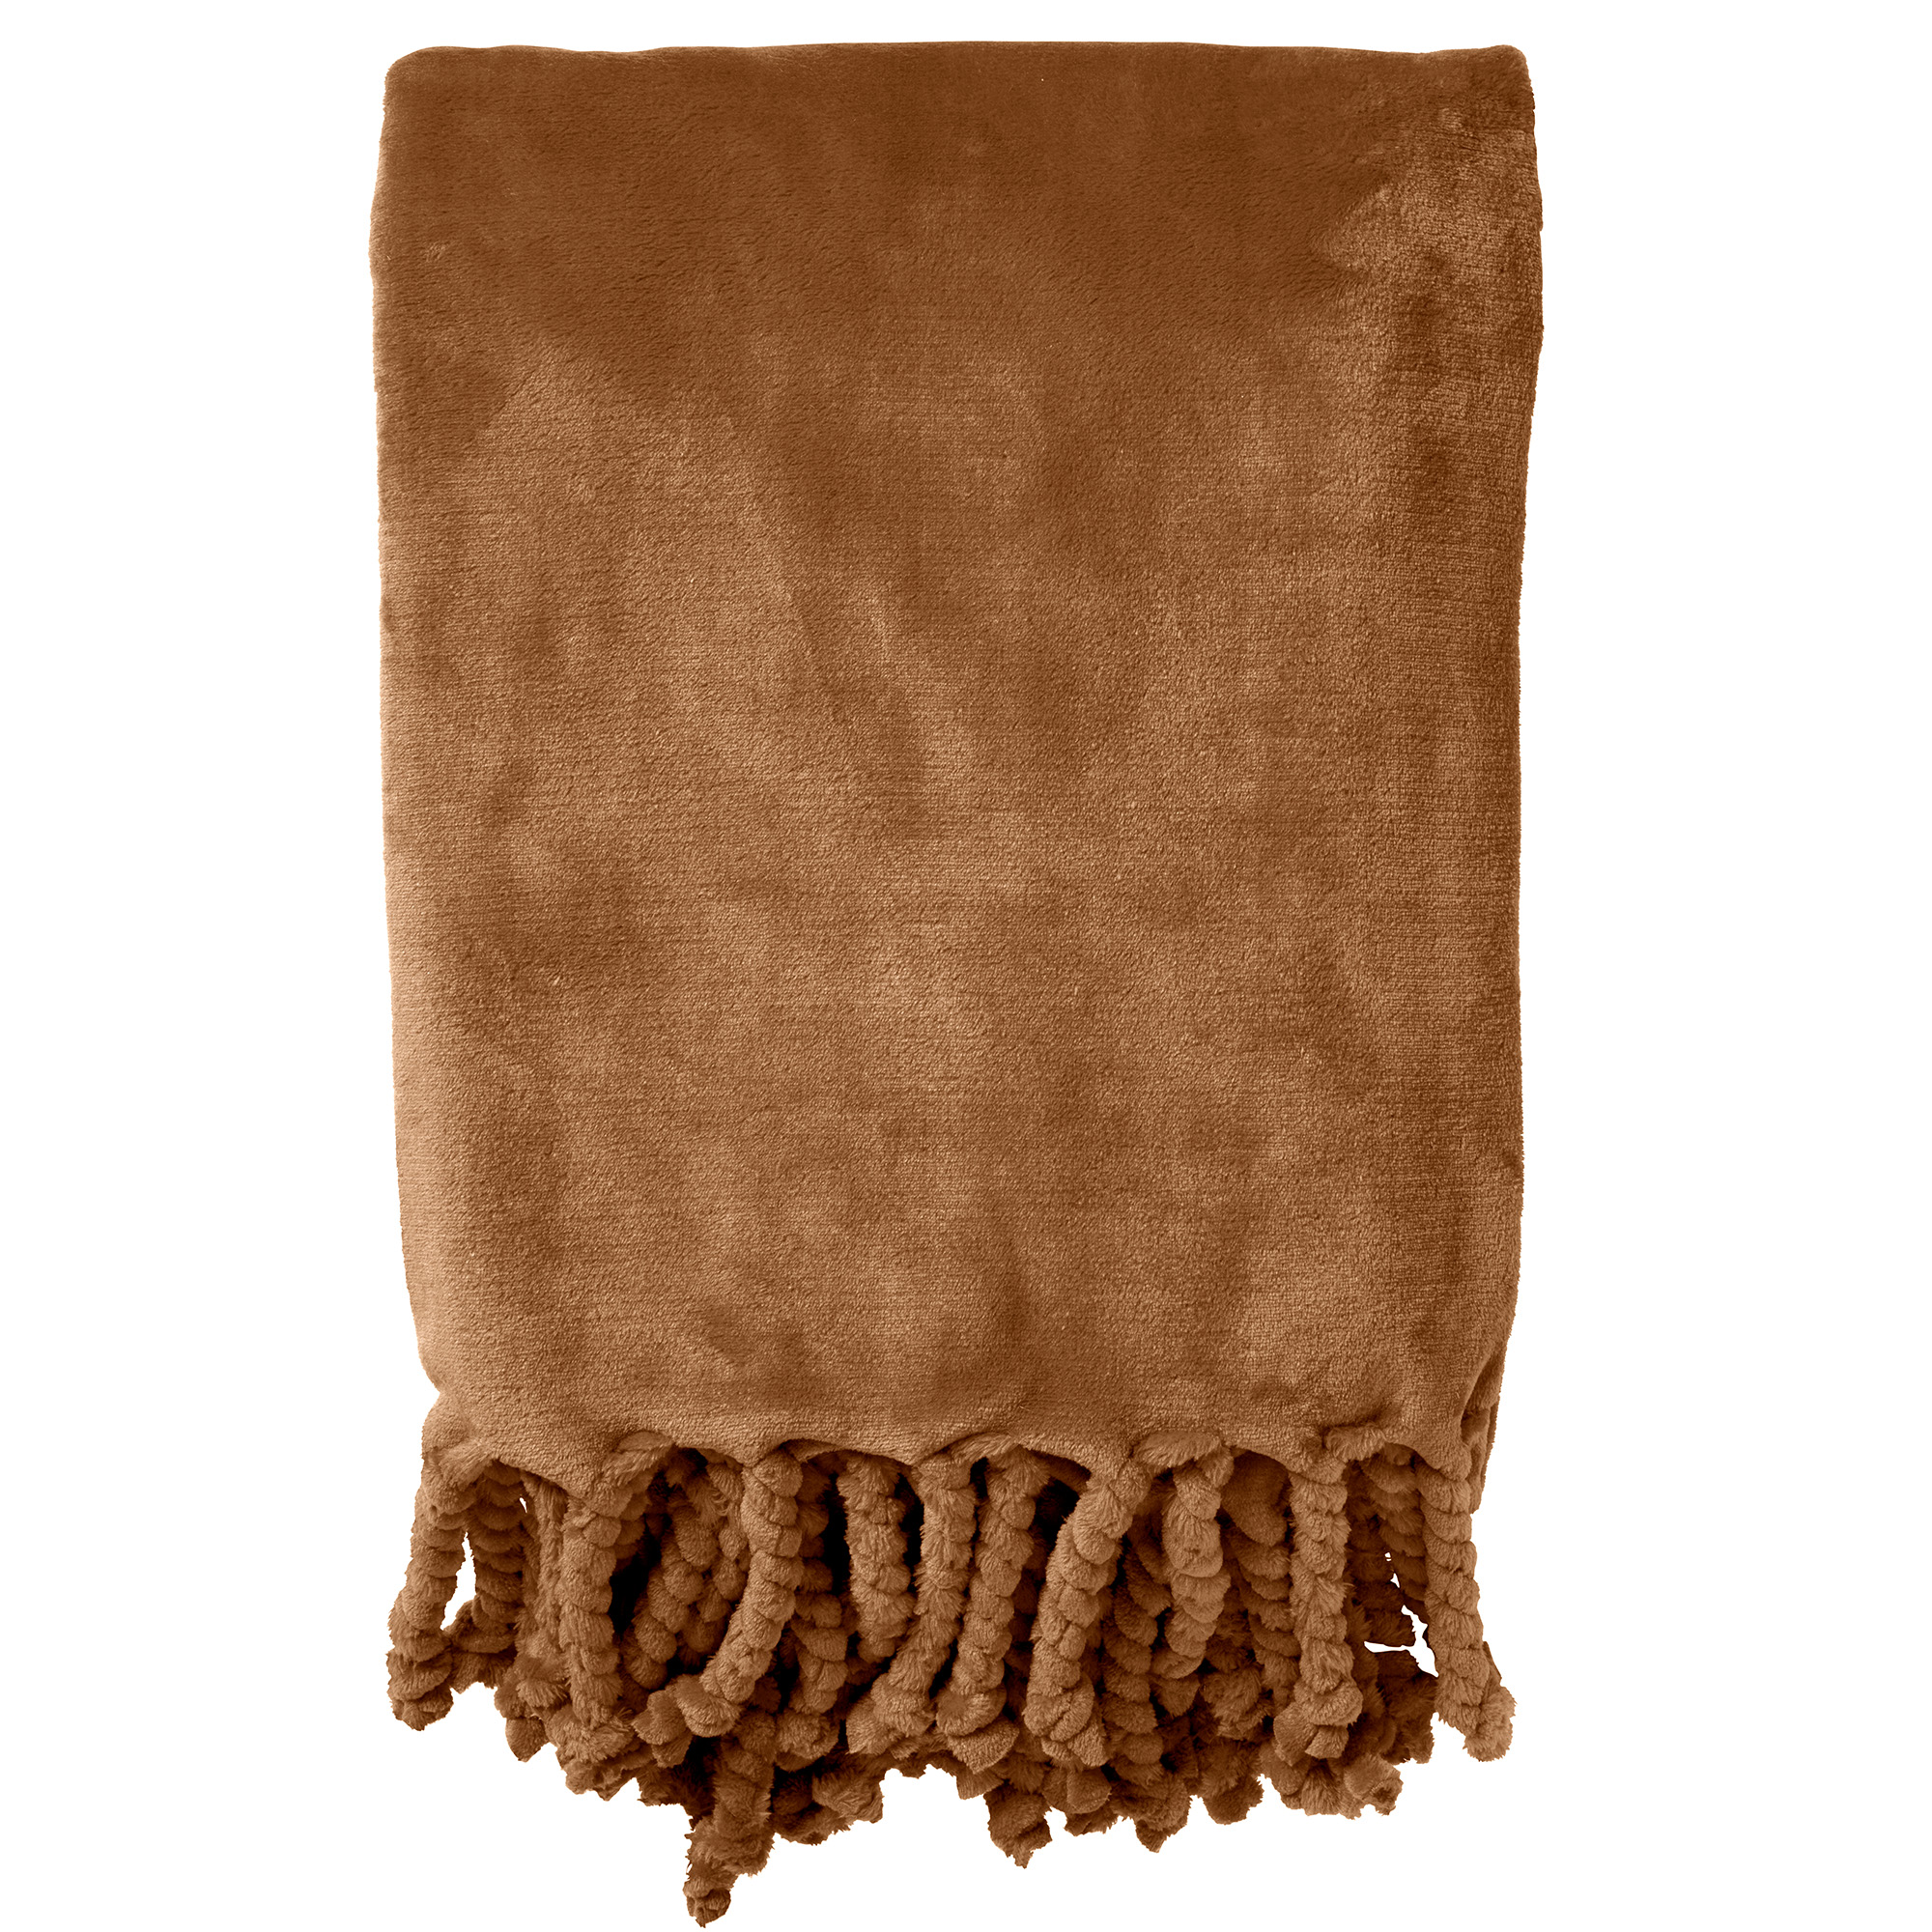 FLORIJN - Plaid 150 x200 cm - grote fleece plaid met flosjes - Tobacco Brown - bruin